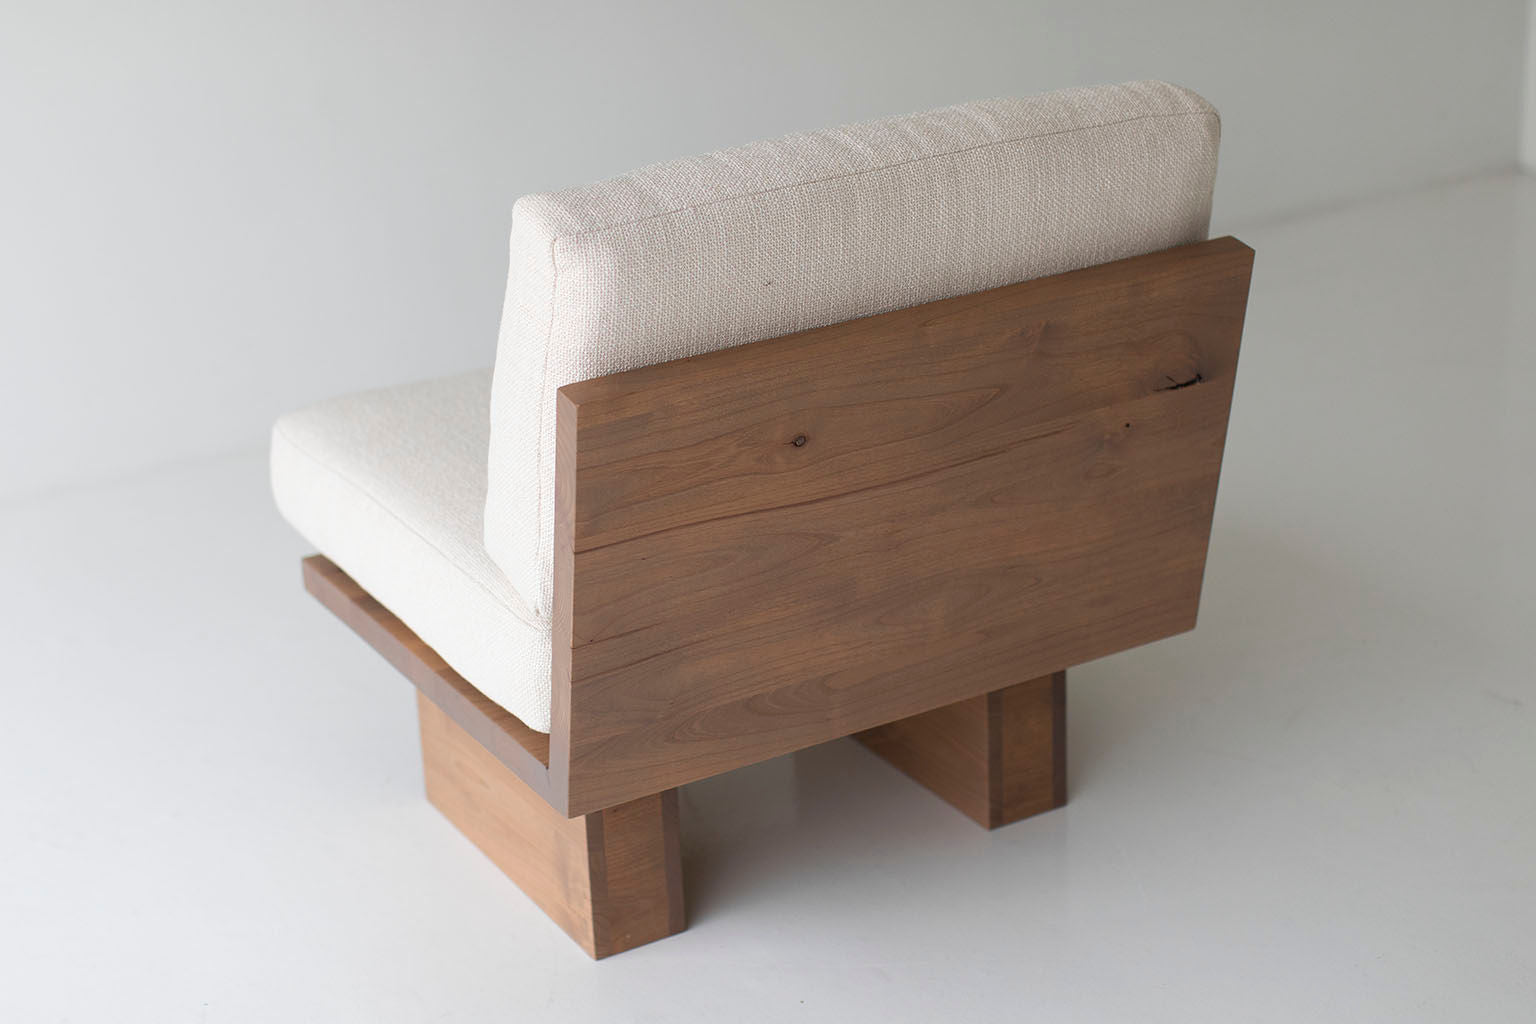 Suelo Modern Side Chair - 0420